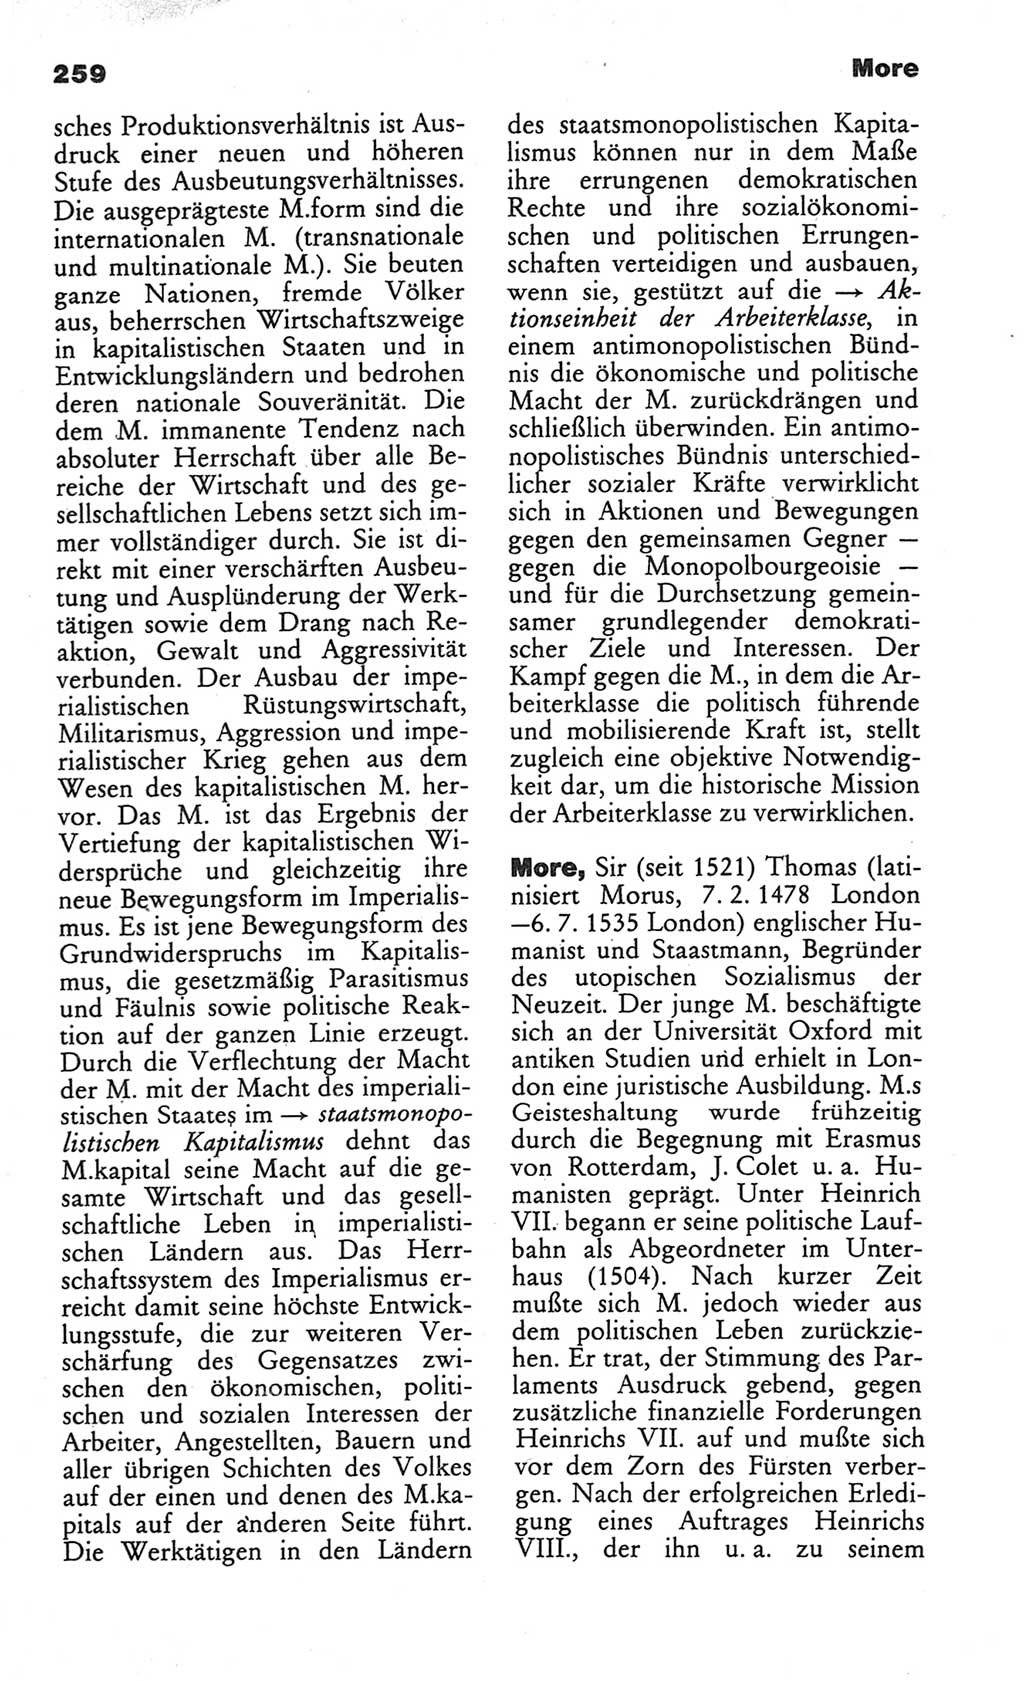 Wörterbuch des wissenschaftlichen Kommunismus [Deutsche Demokratische Republik (DDR)] 1984, Seite 259 (Wb. wiss. Komm. DDR 1984, S. 259)